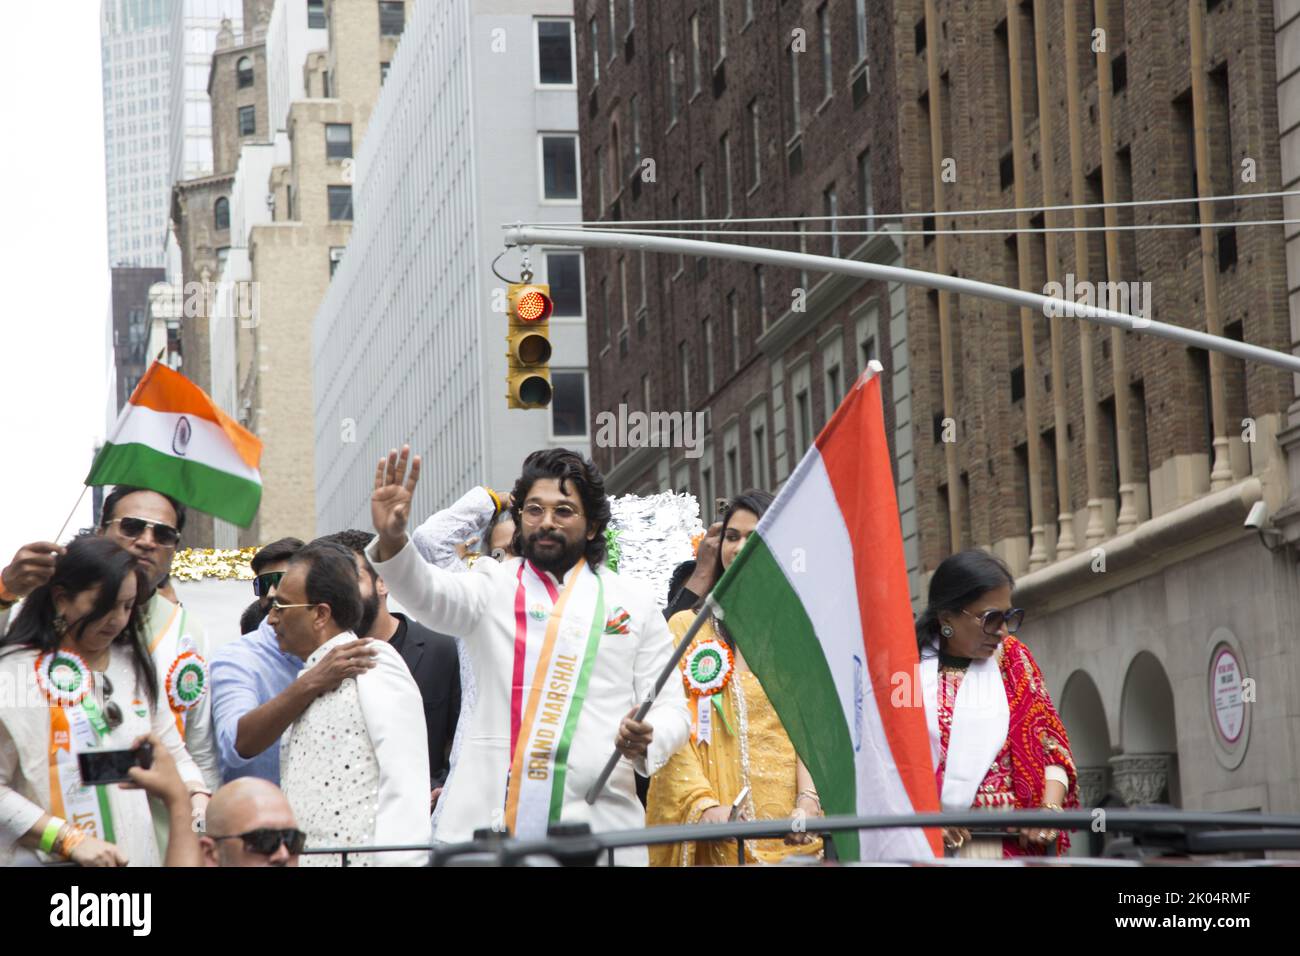 Allu Arjun, estrella de icono y héroe de Tollywood, fue el Gran Mariscal en el desfile del Día de la India que se celebró el domingo 21 de agosto en la ciudad de Nueva York. El desfile también marca el 75th aniversario de la Independencia de la India este año 2022 5th aniversario Desfile del Día de la Independencia de la India en Madison Avenue en la ciudad de Nueva York. Foto de stock